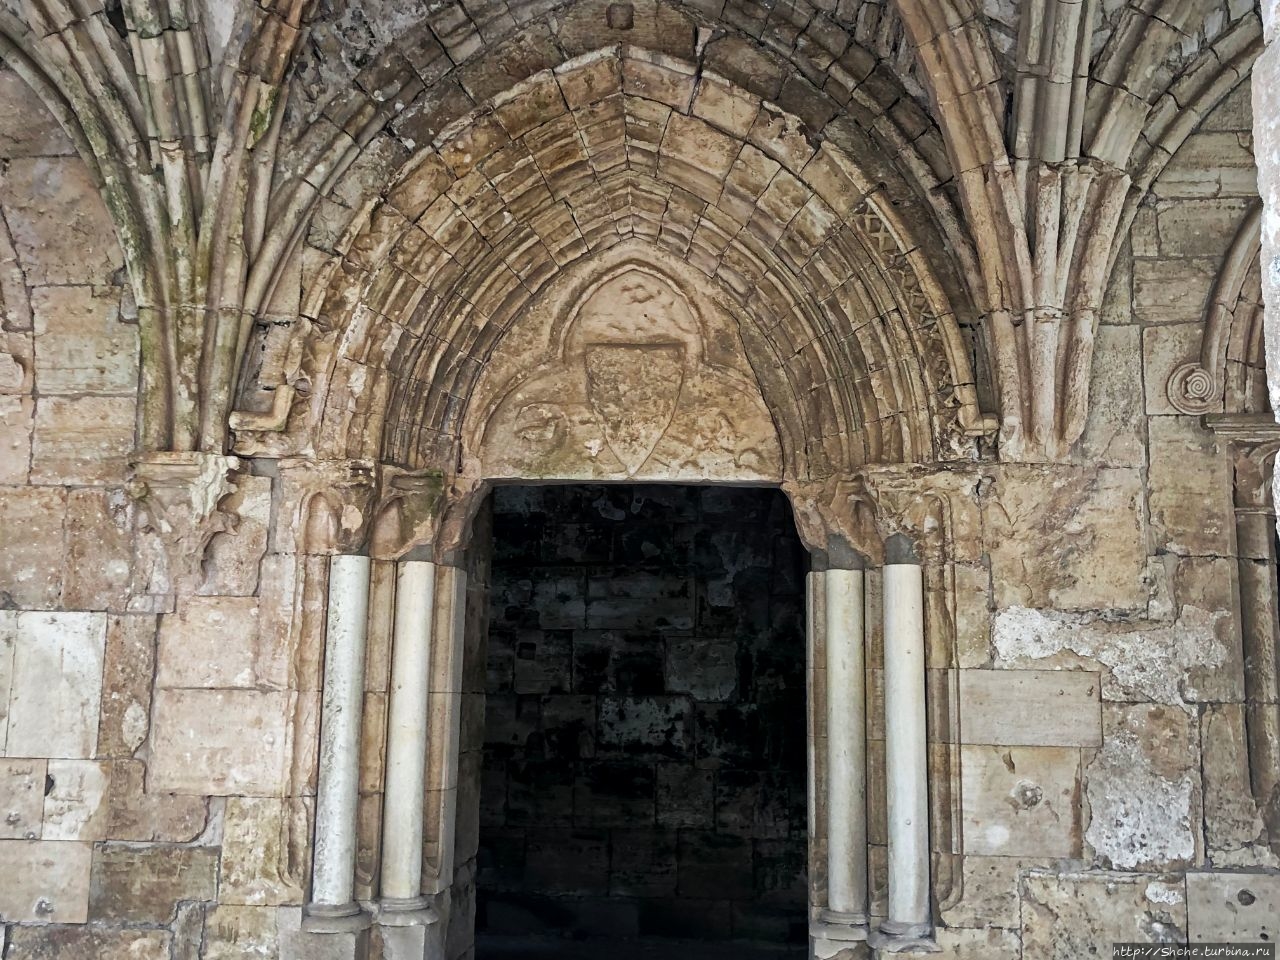 Крак-де-Шевалье - исключительный образец замка крестоносцев